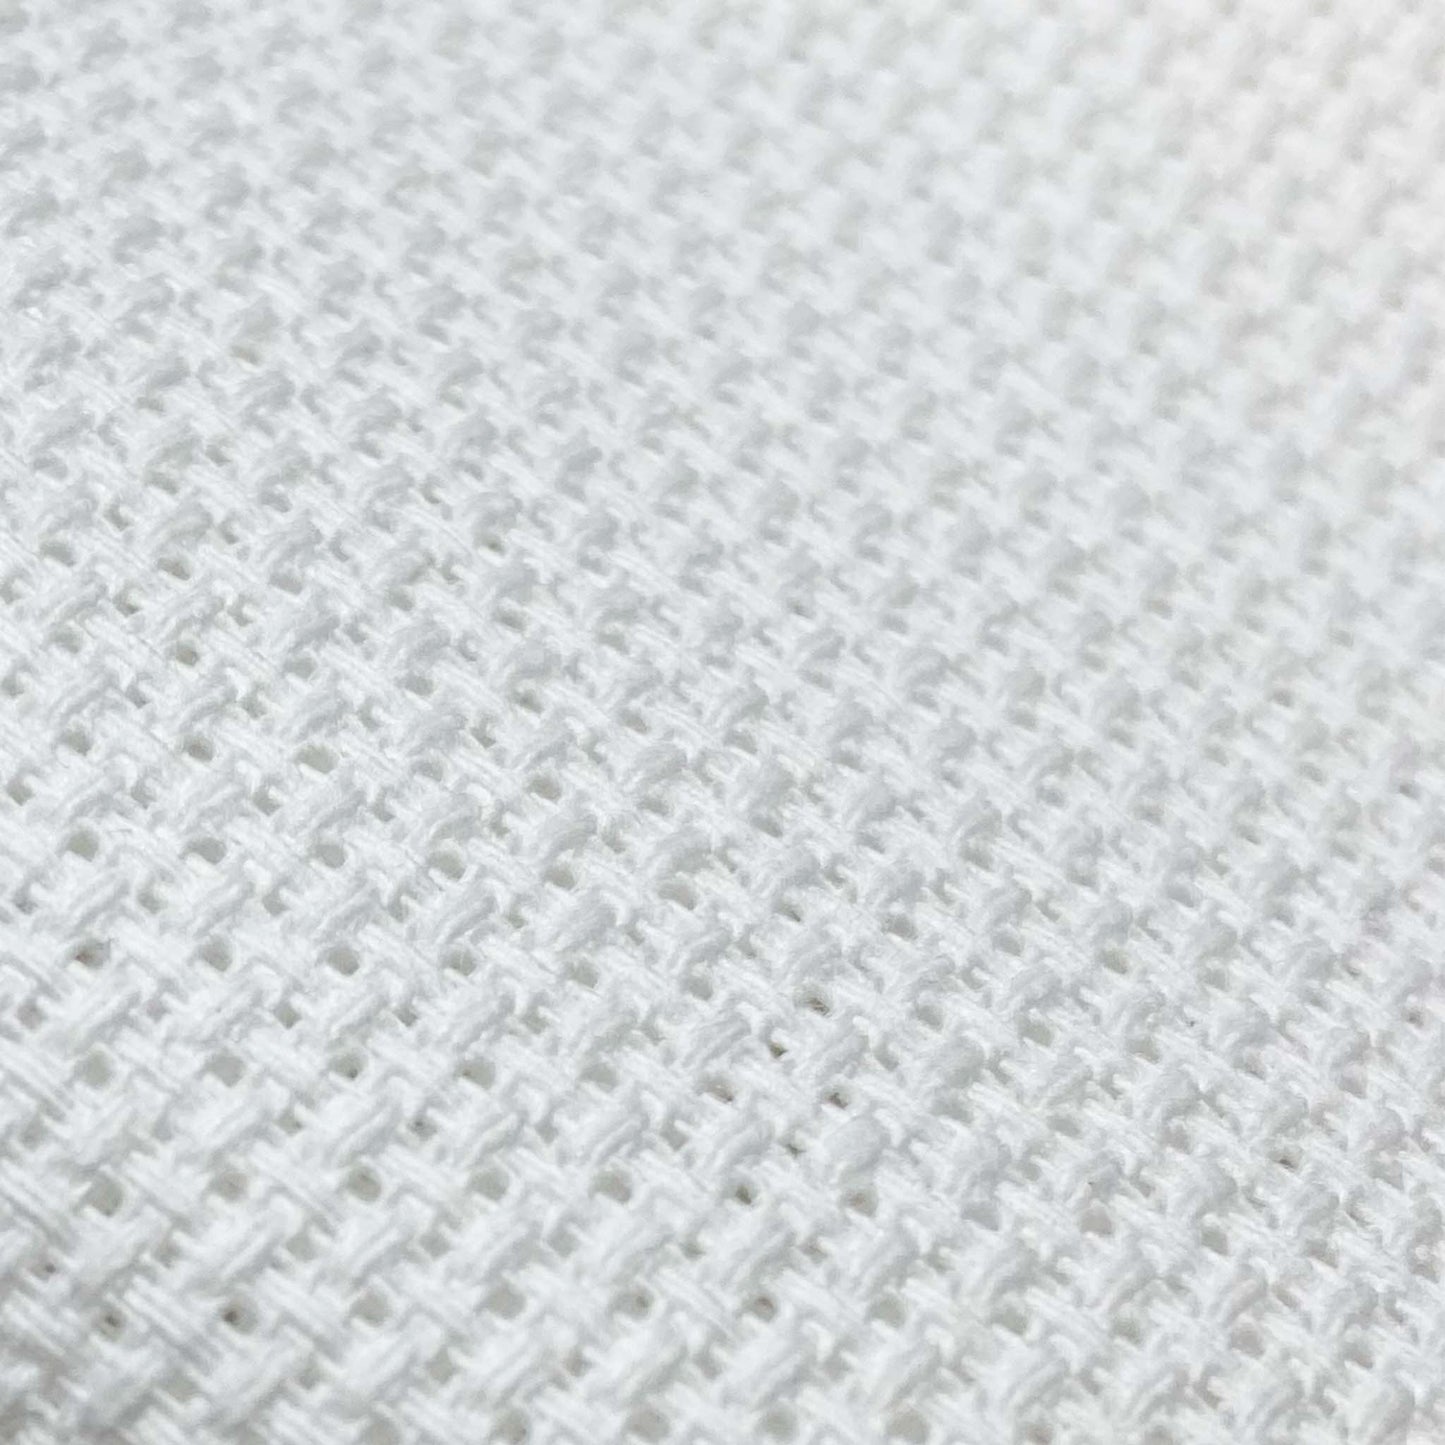 Aida fabric squares - 14ct White